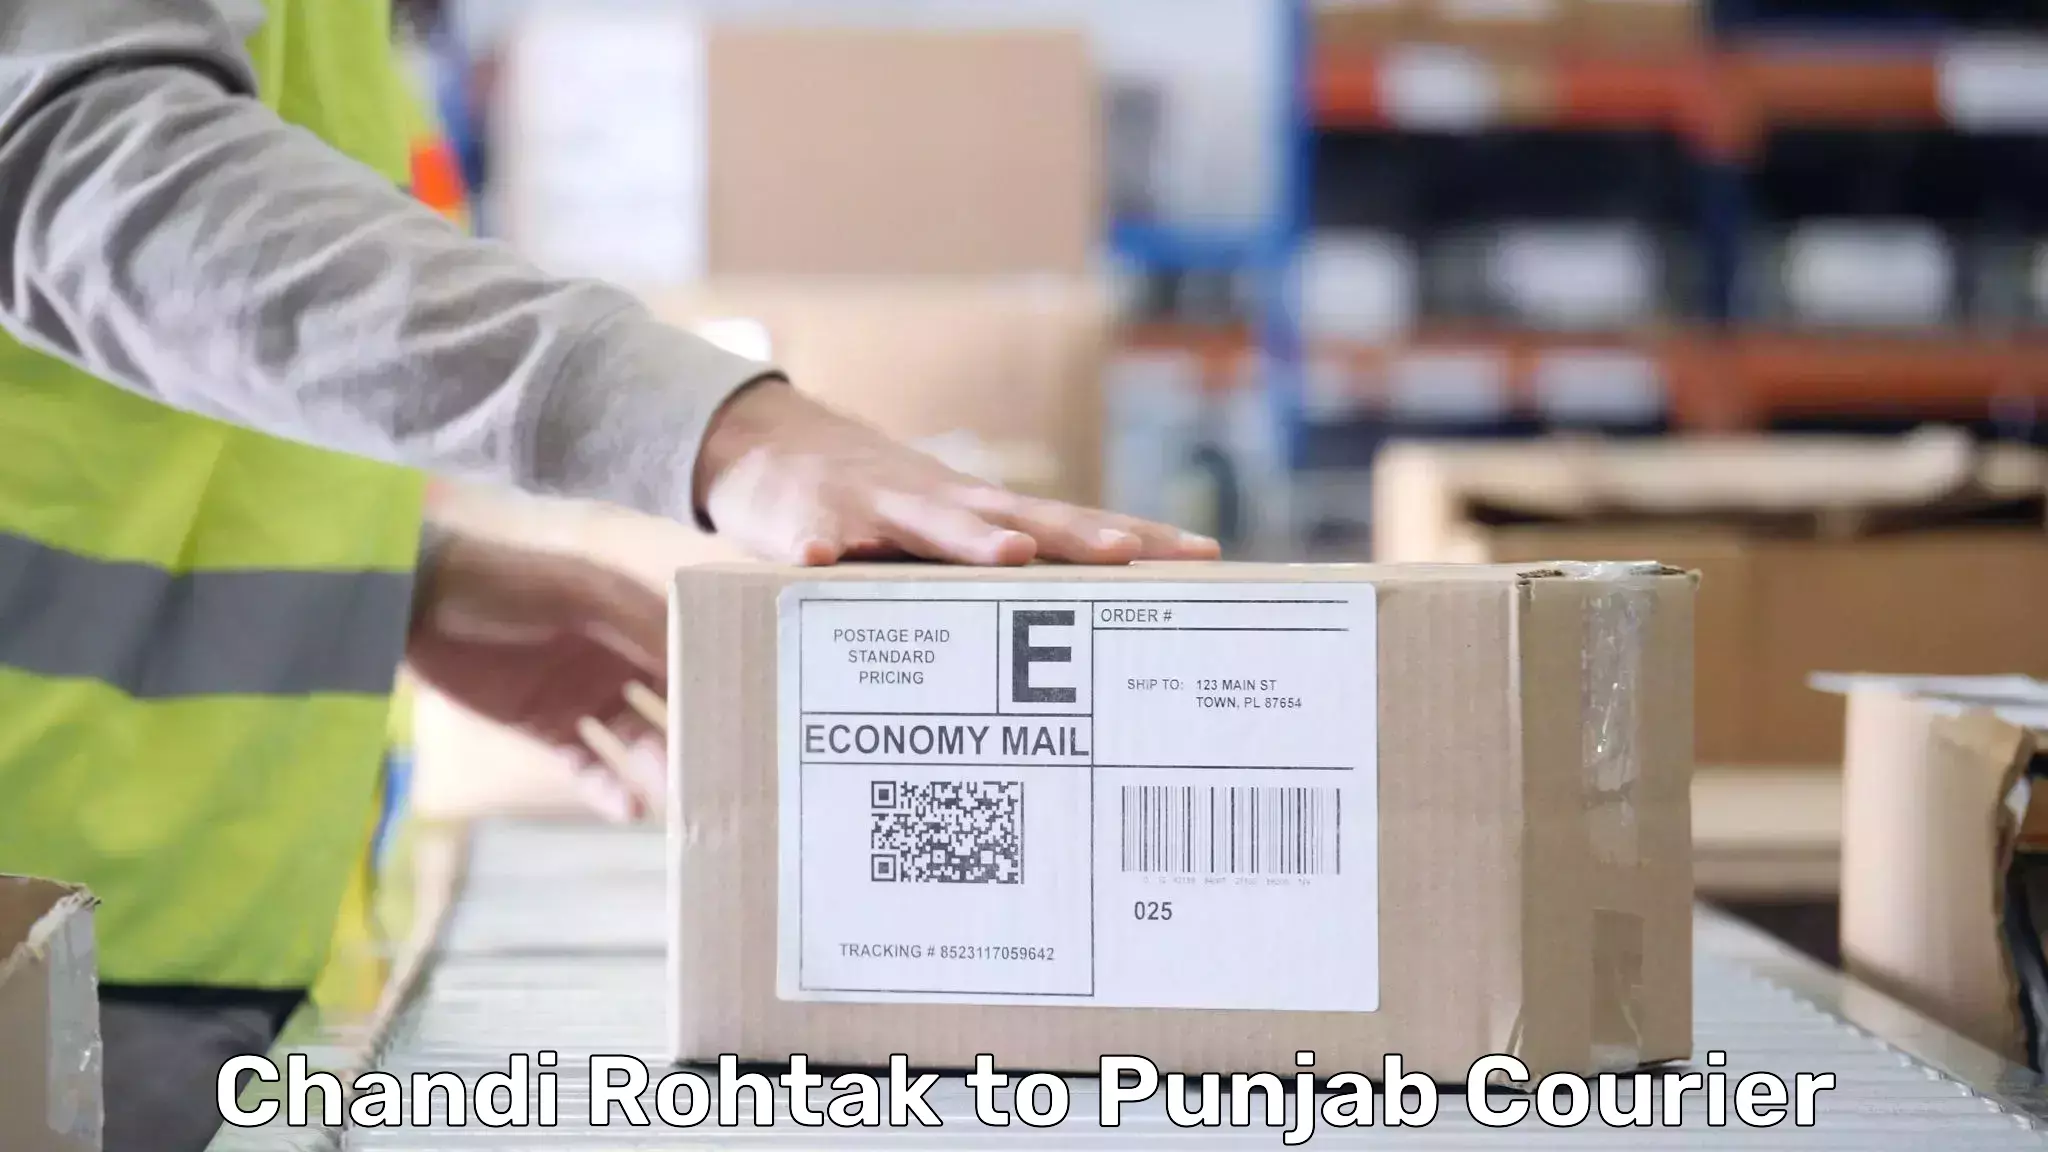 Door-to-door baggage service Chandi Rohtak to Pathankot